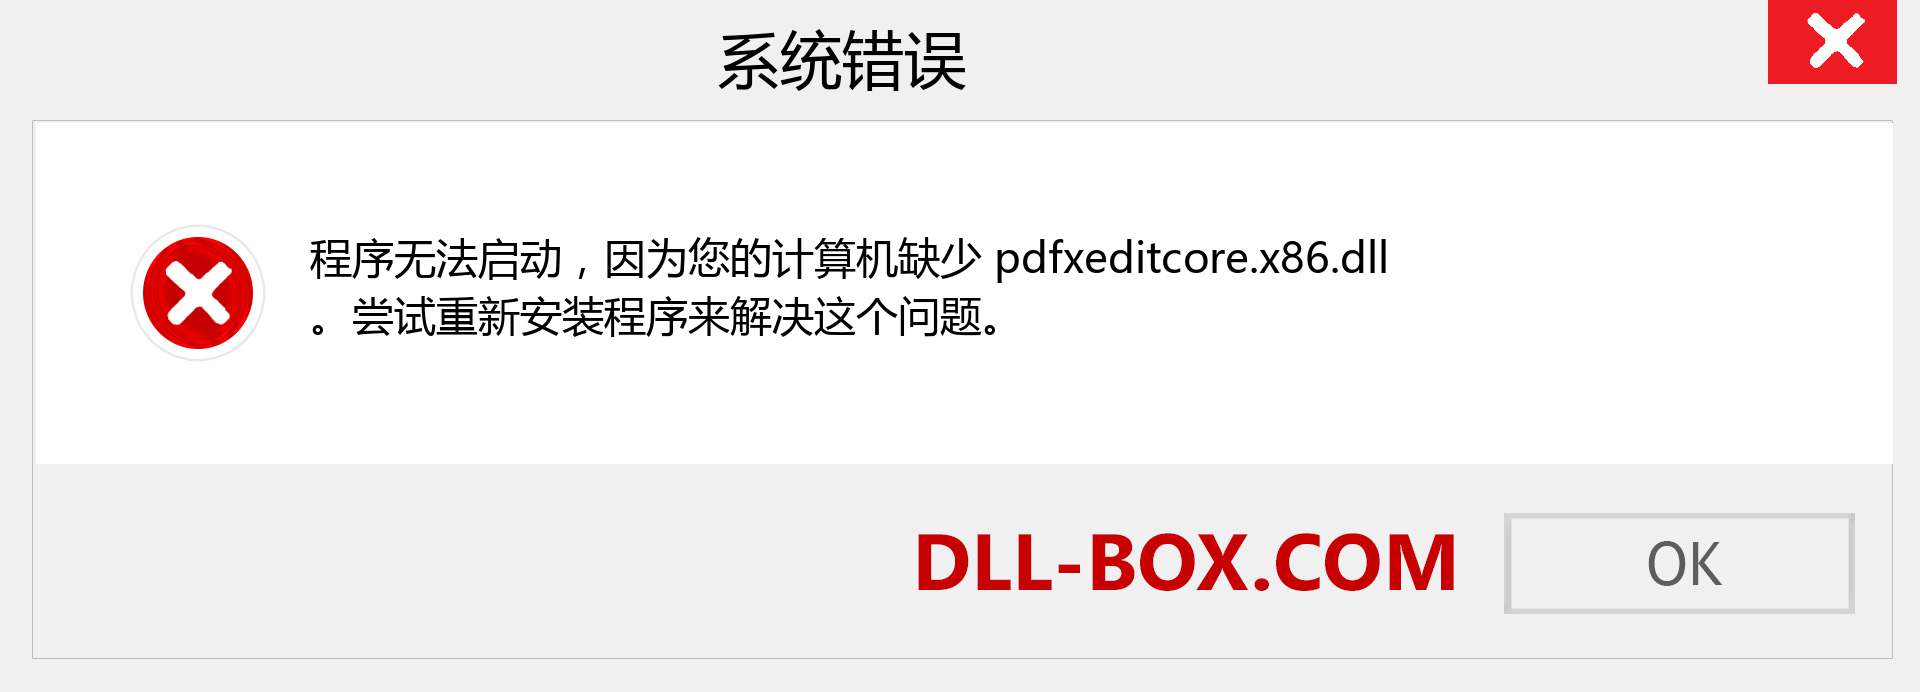 pdfxeditcore.x86.dll 文件丢失？。 适用于 Windows 7、8、10 的下载 - 修复 Windows、照片、图像上的 pdfxeditcore.x86 dll 丢失错误